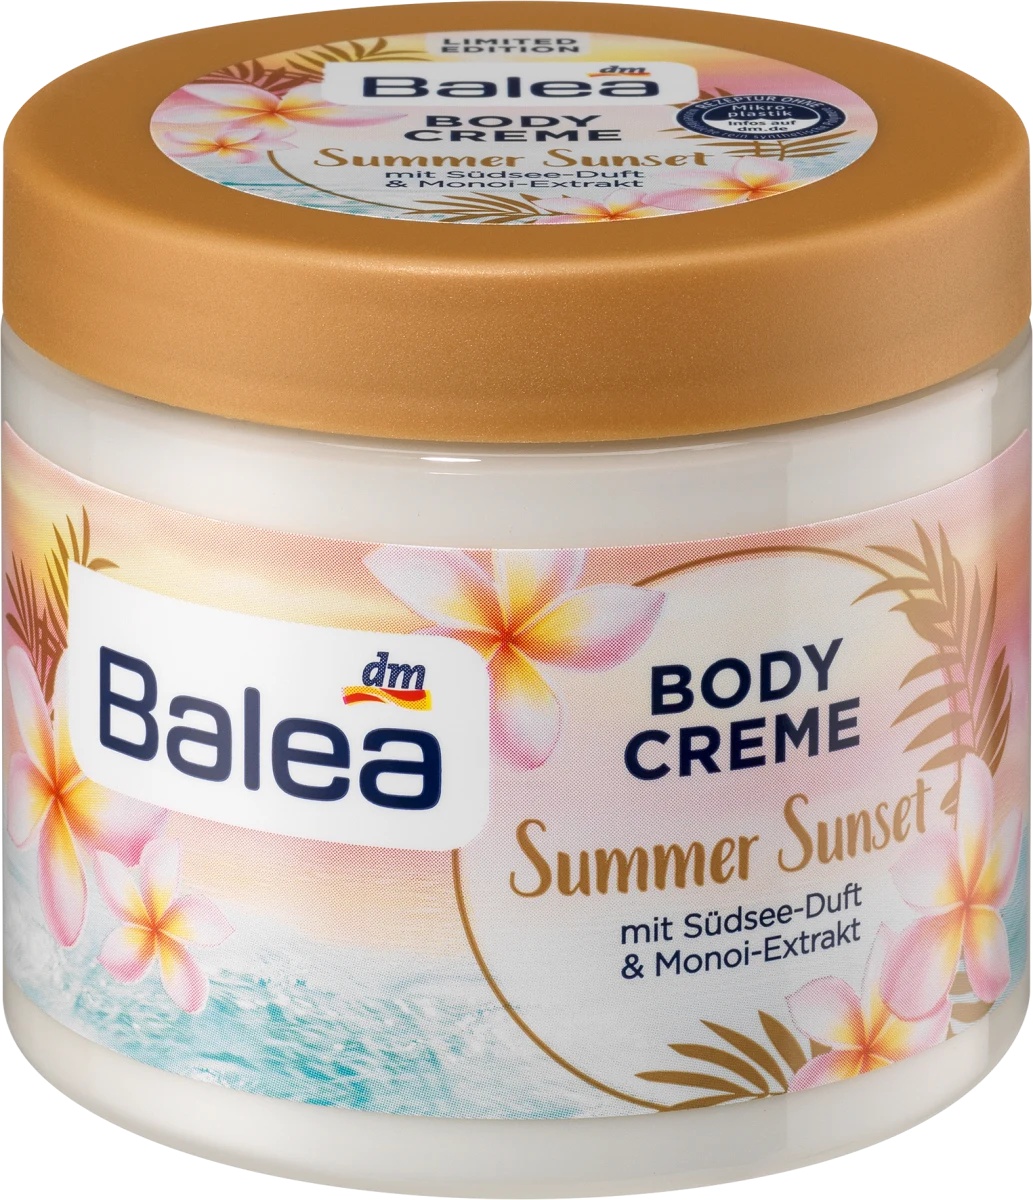 Balea Summer Sunset Body Creme